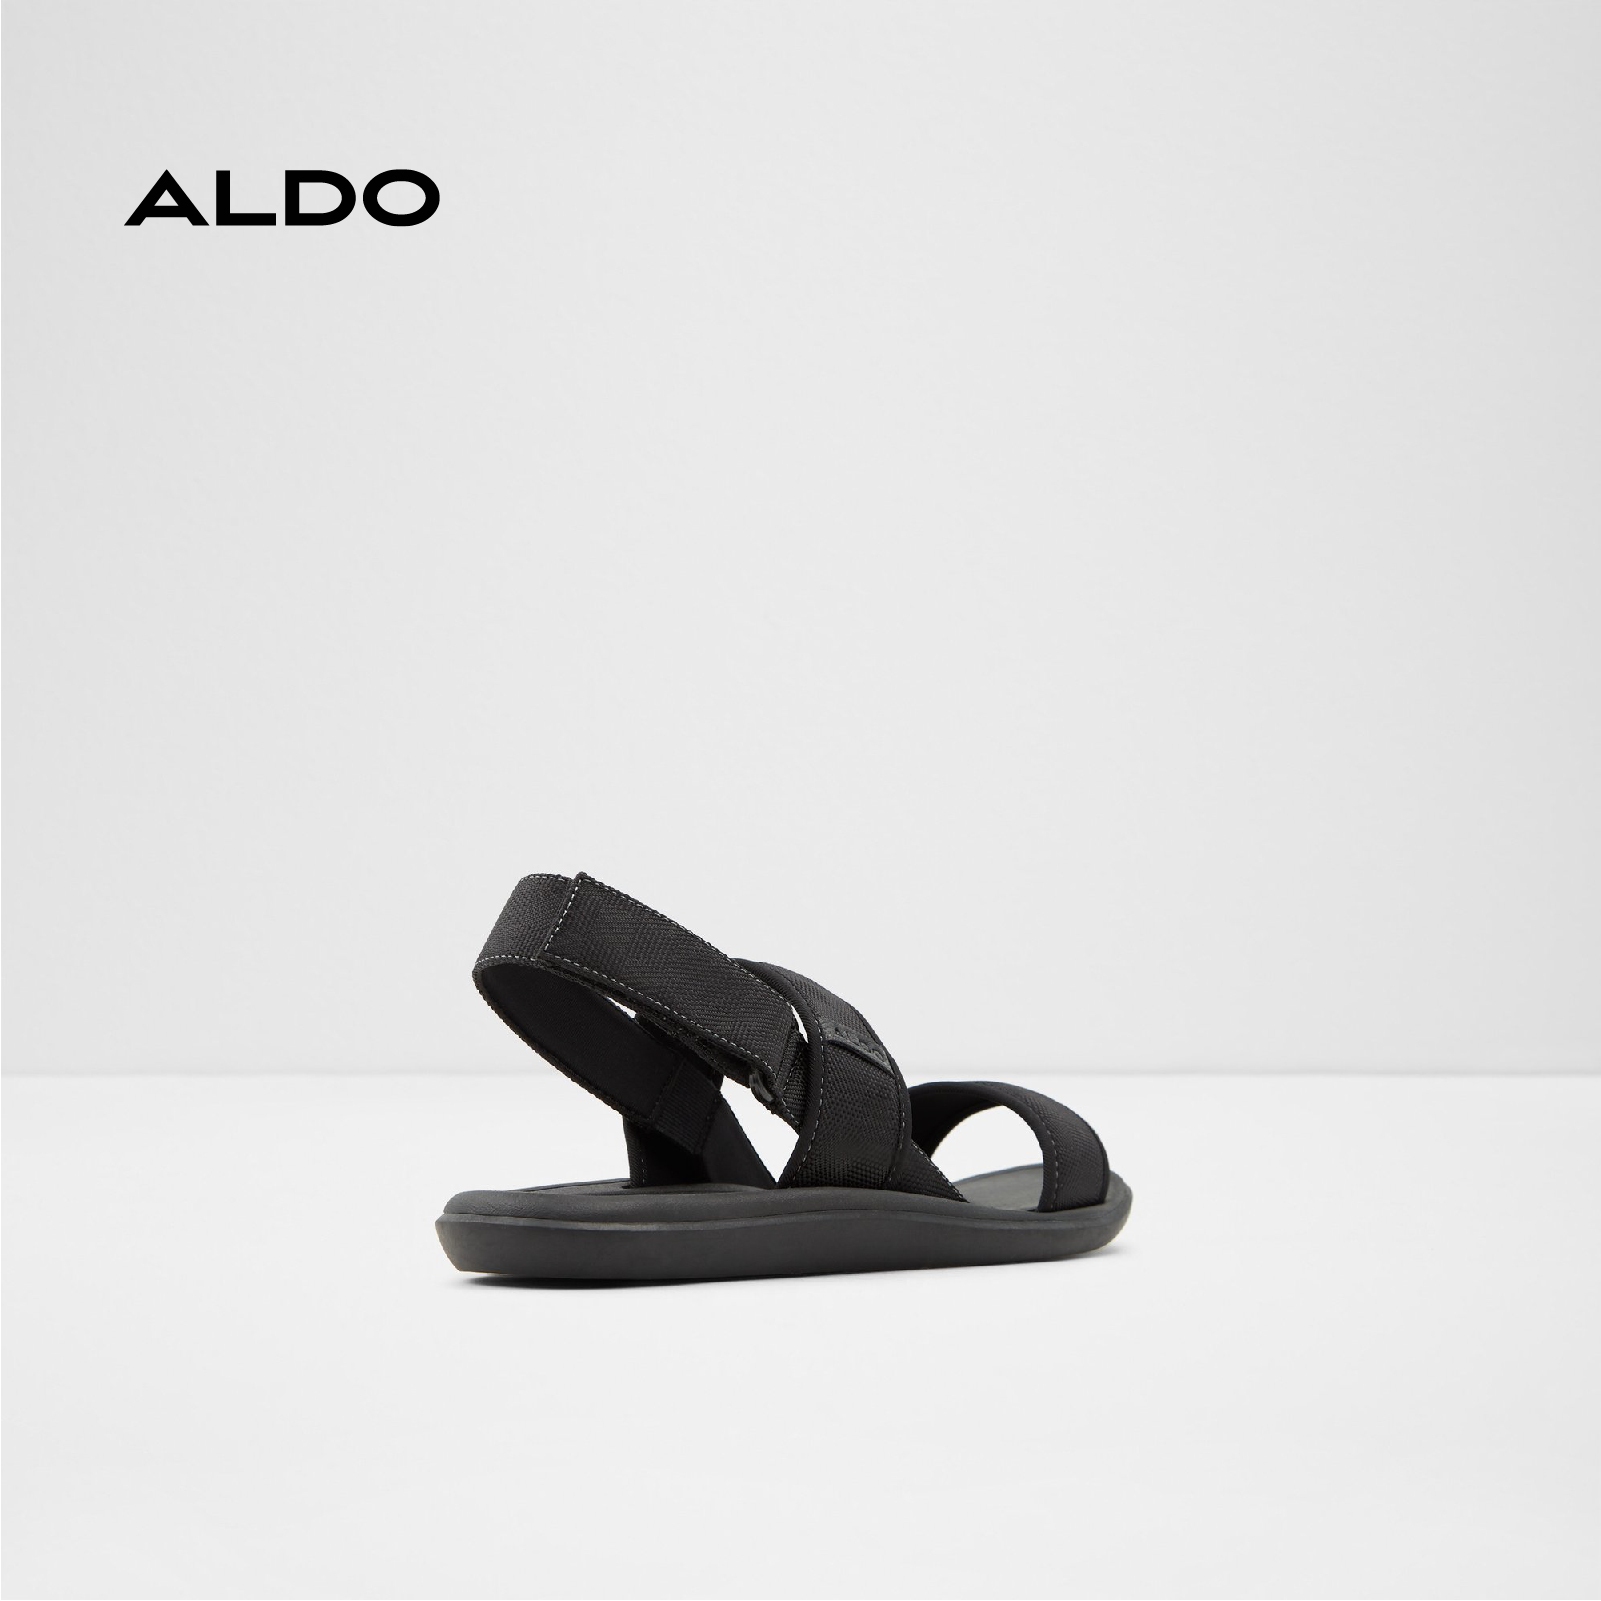 Sandals nam PAEGLU Aldo